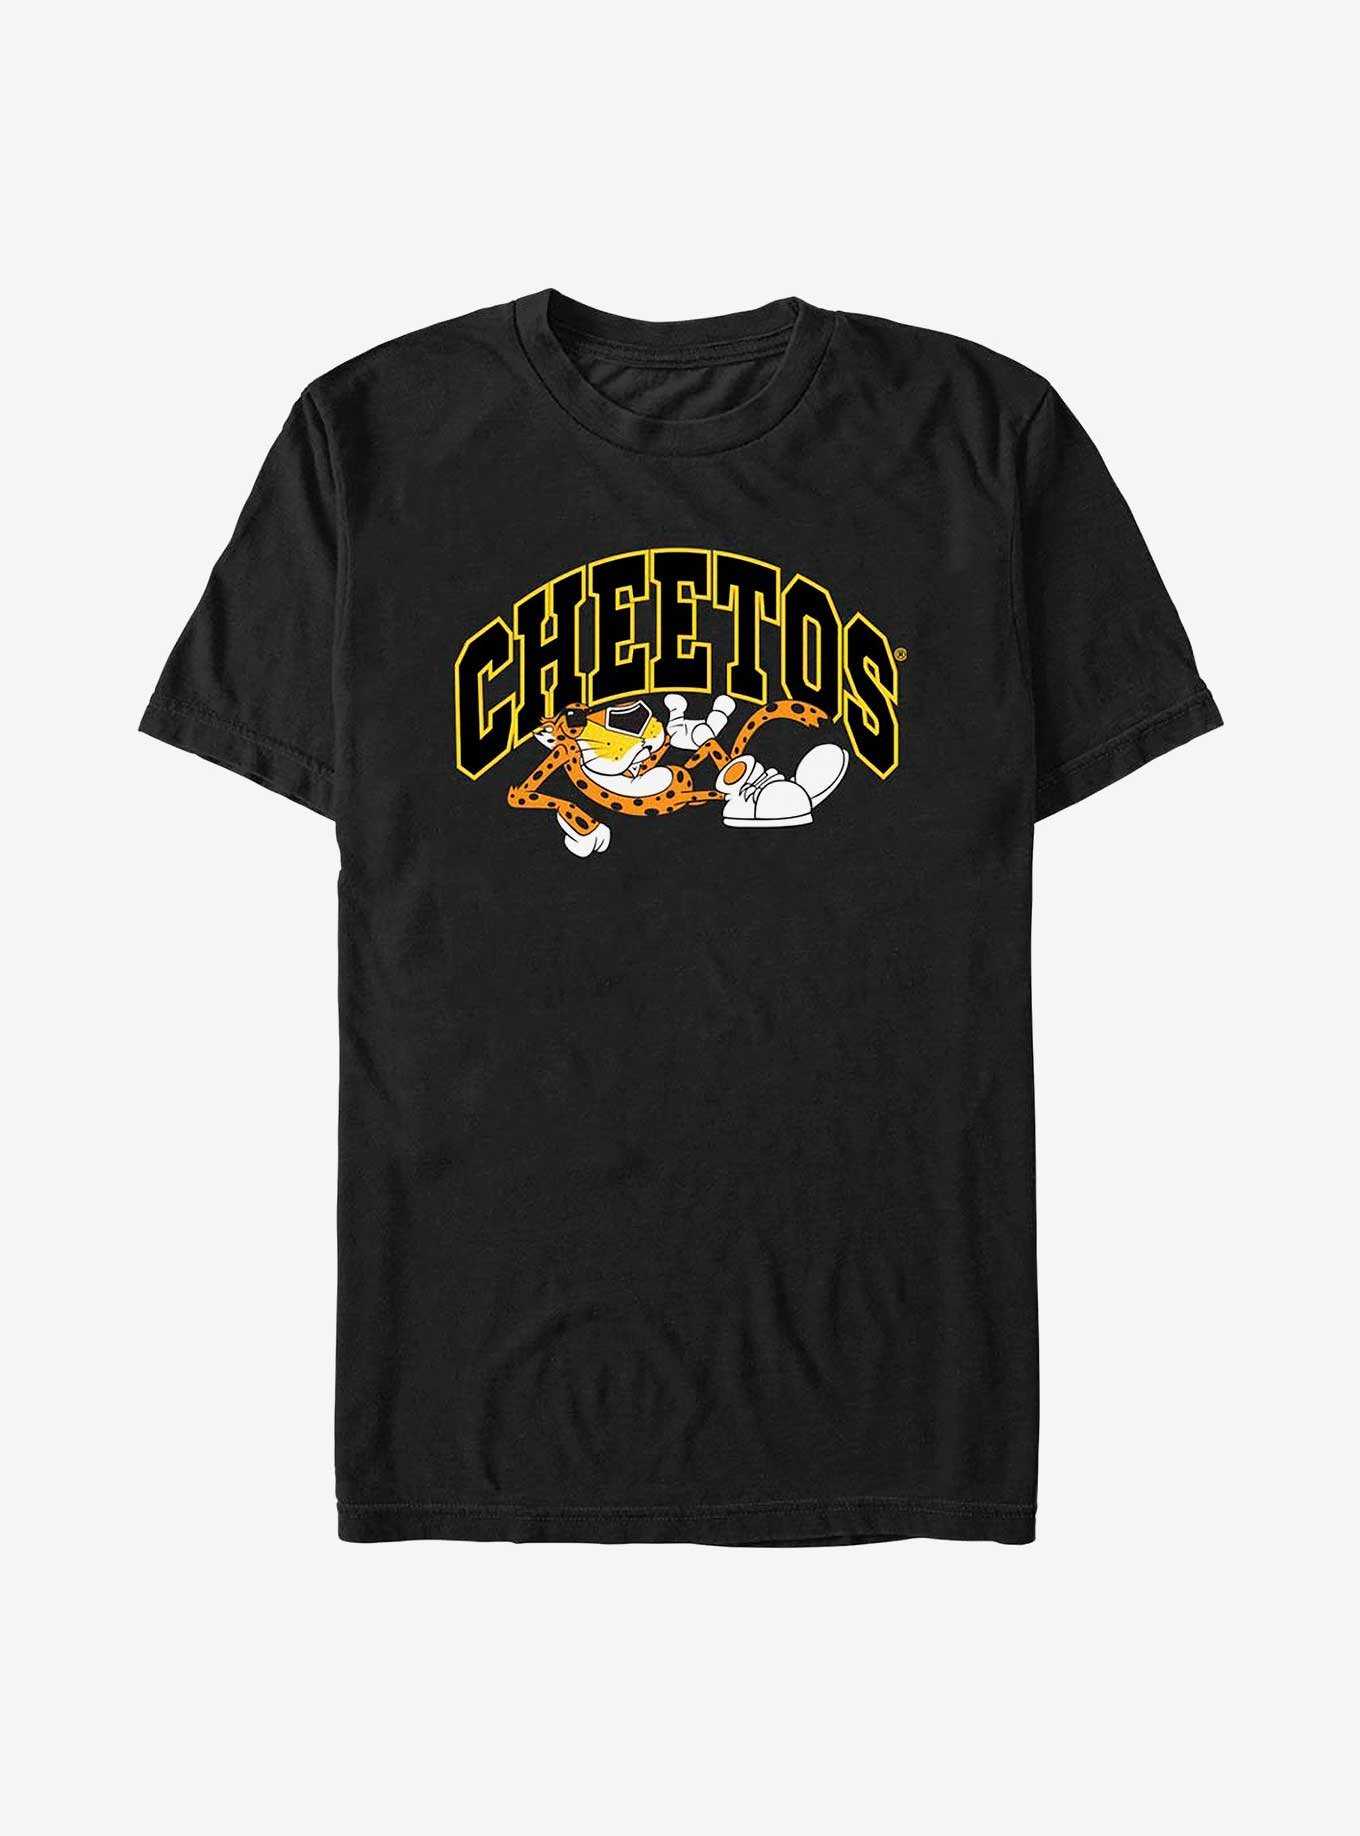 Cheetos Varsity T-Shirt, , hi-res